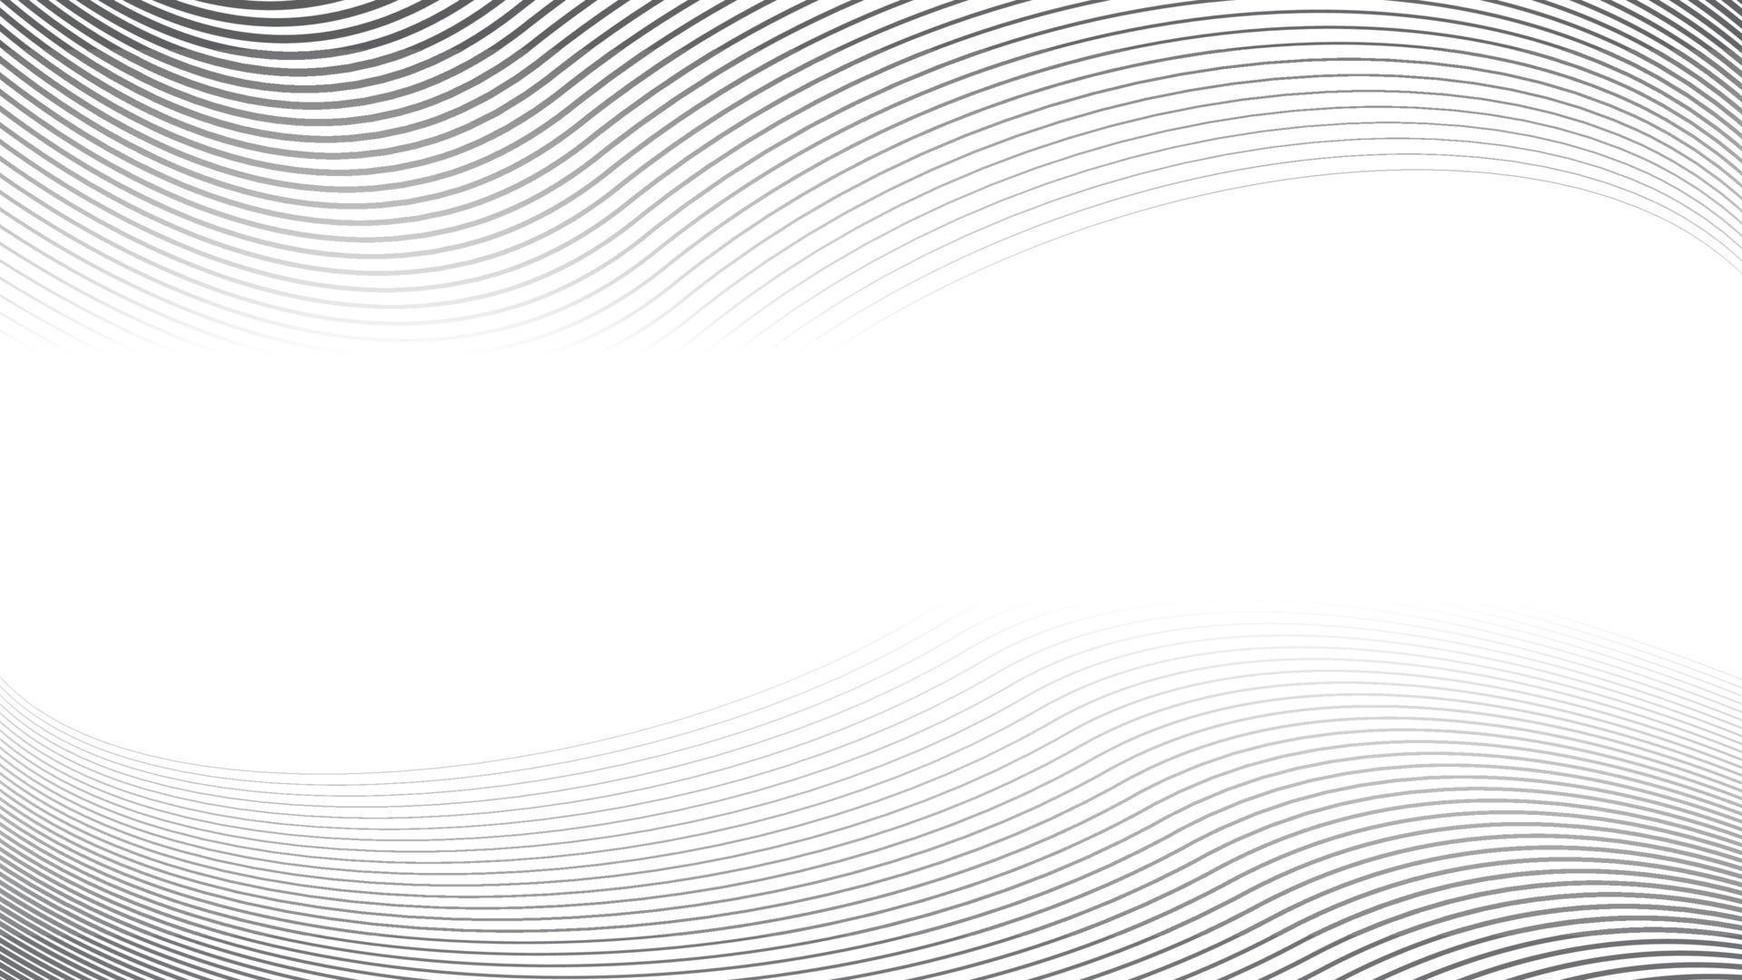 fondo rayado diagonal deformado abstracto. vector curvo torcido inclinado, patrón de líneas onduladas